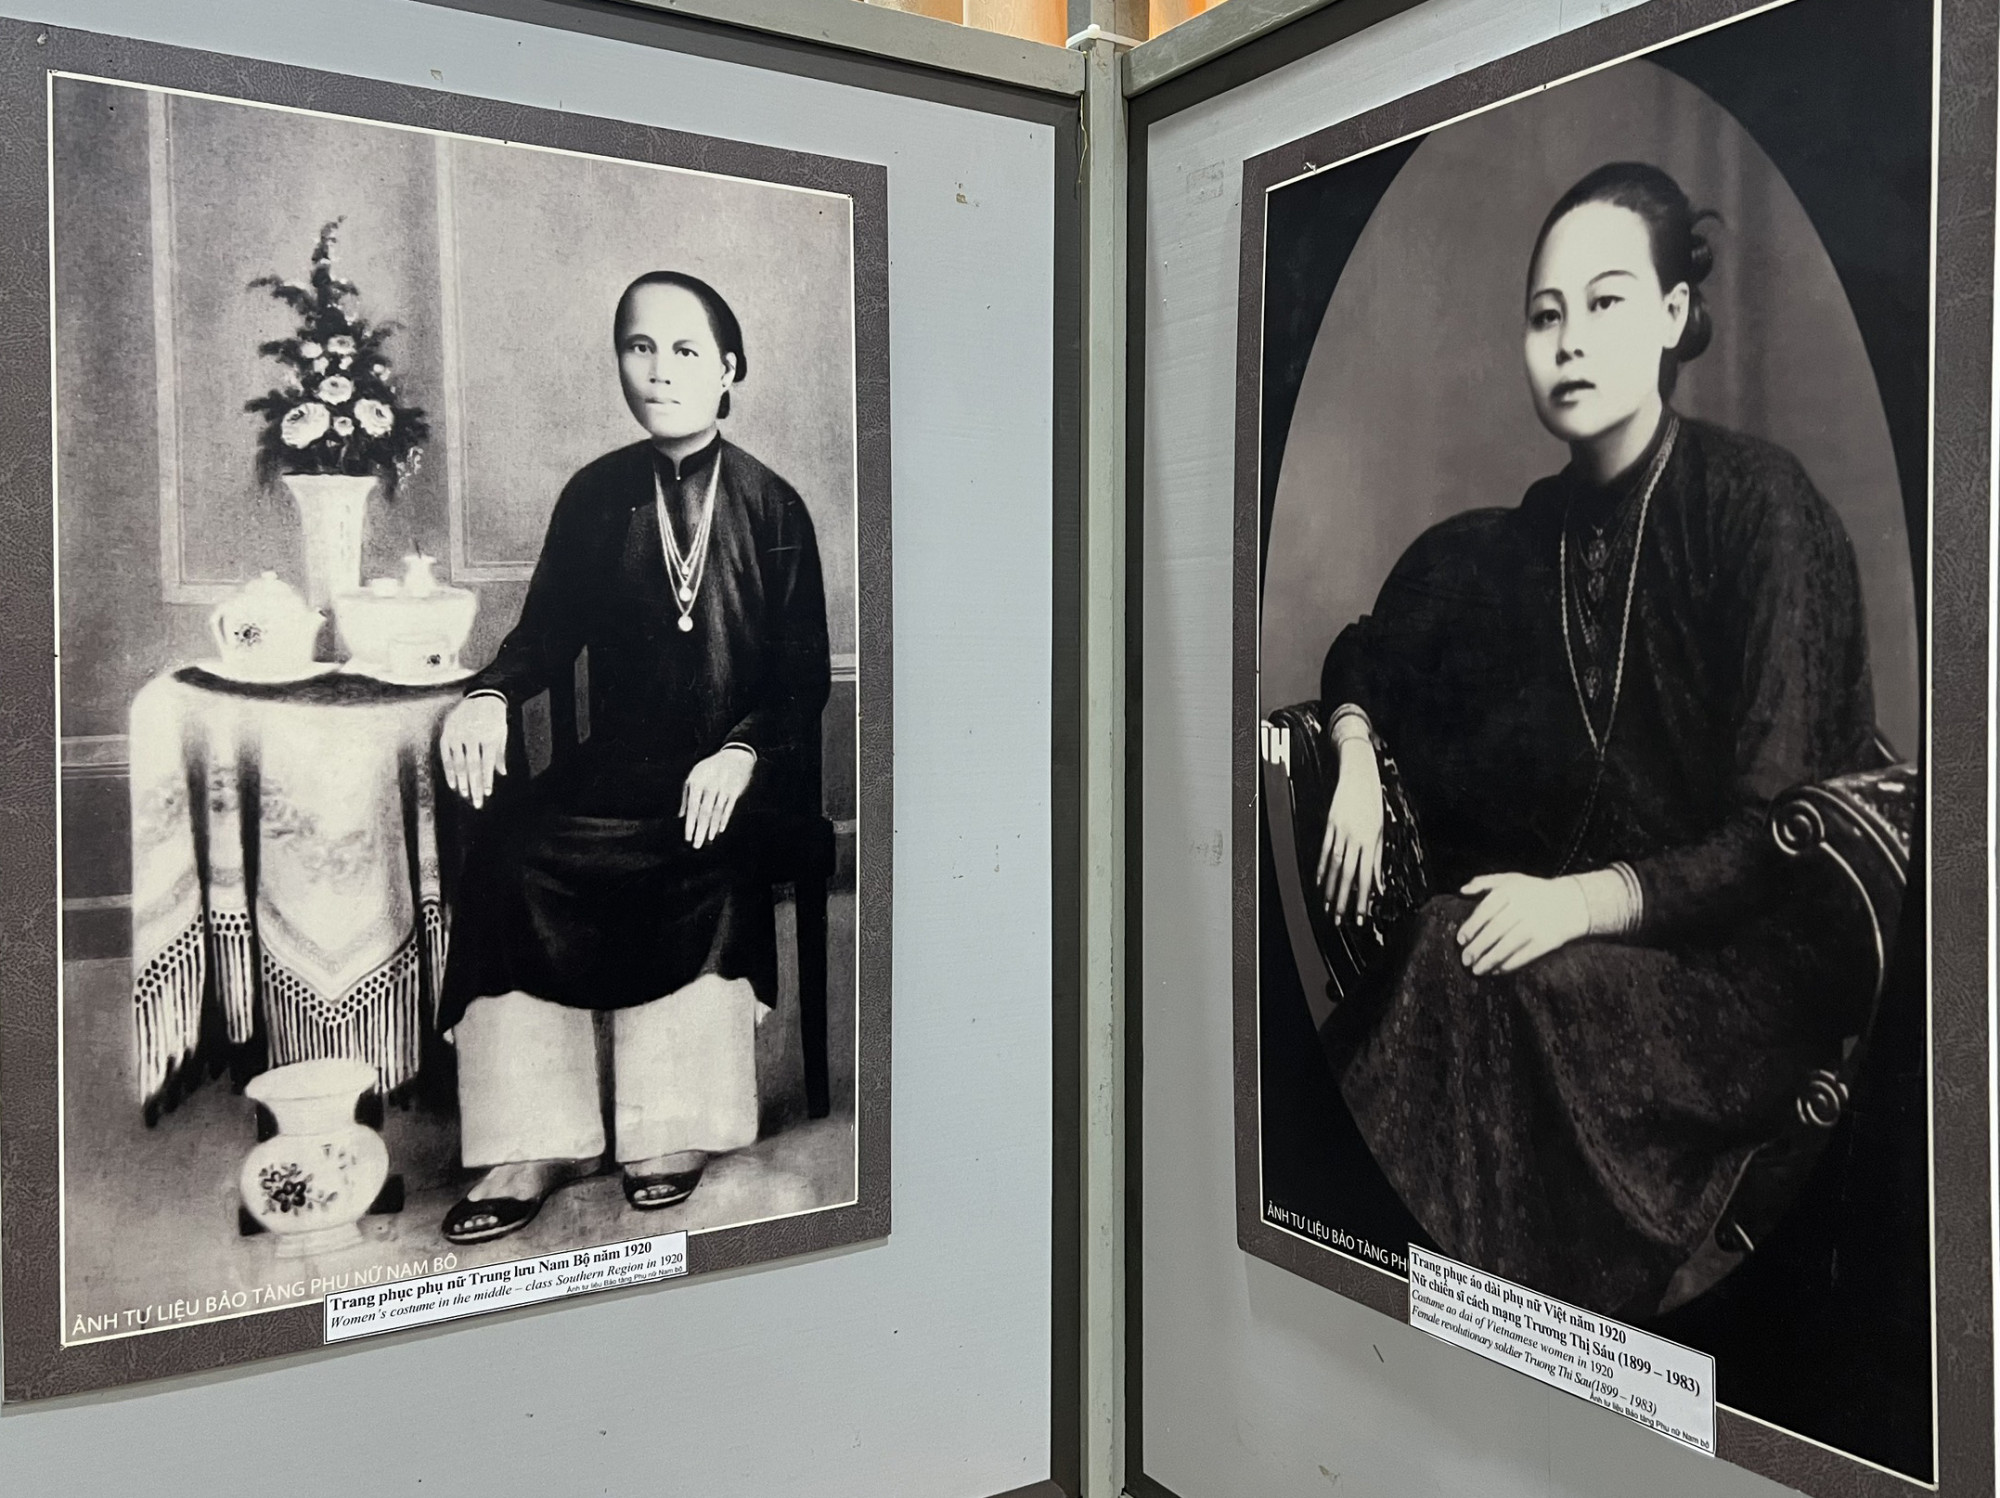 Áo dài của phụ nữ trong những năm 1920. Trong đó, ảnh bên phải nữ anh hùng cách mạng Trương Thị Sáu. Còn ảnh bên trái là mẫu áo dài dành cho phụ nữ trung lưu trong cùng thời kỷ này.